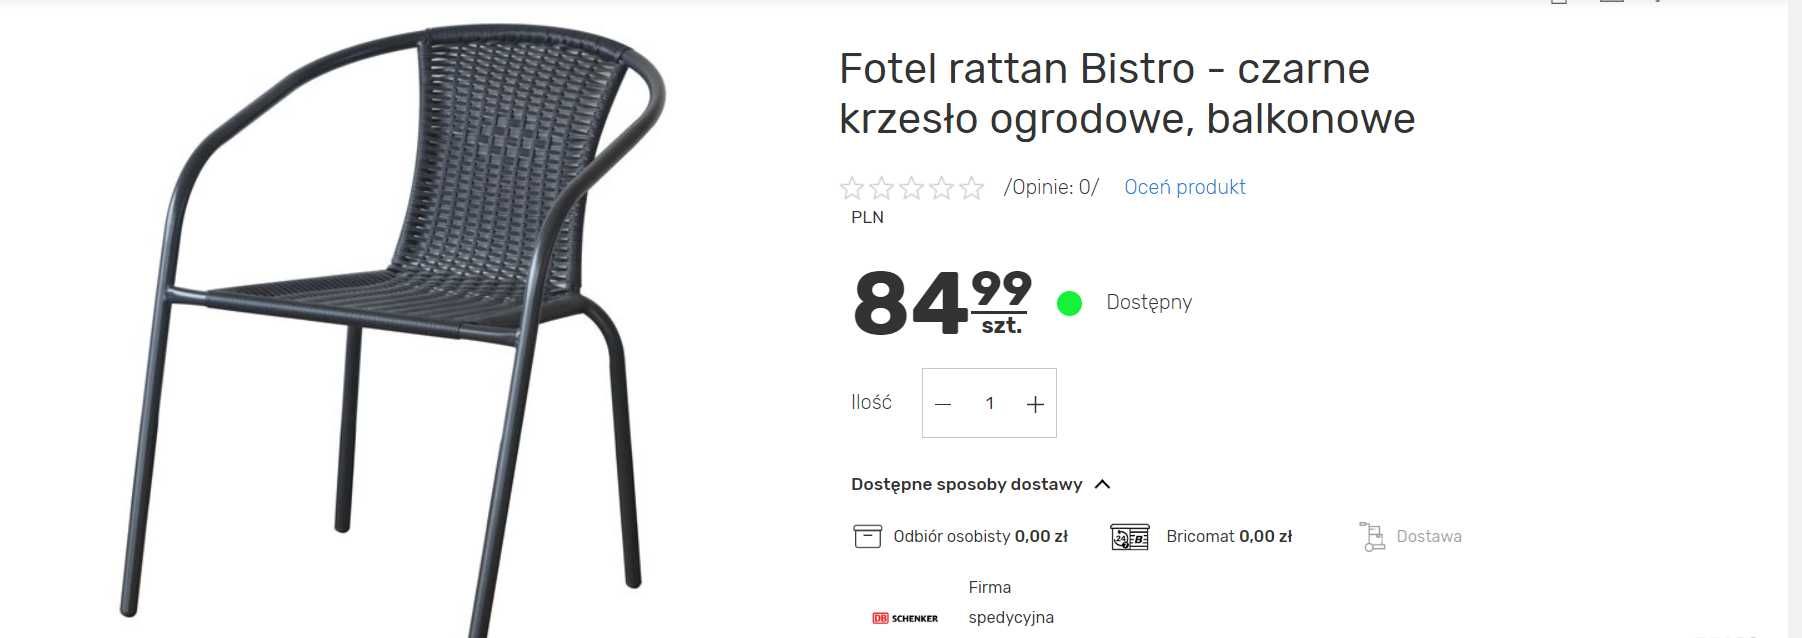 Fotel rattan Bistro - czarne krzesło ogrodowe, balkonowe